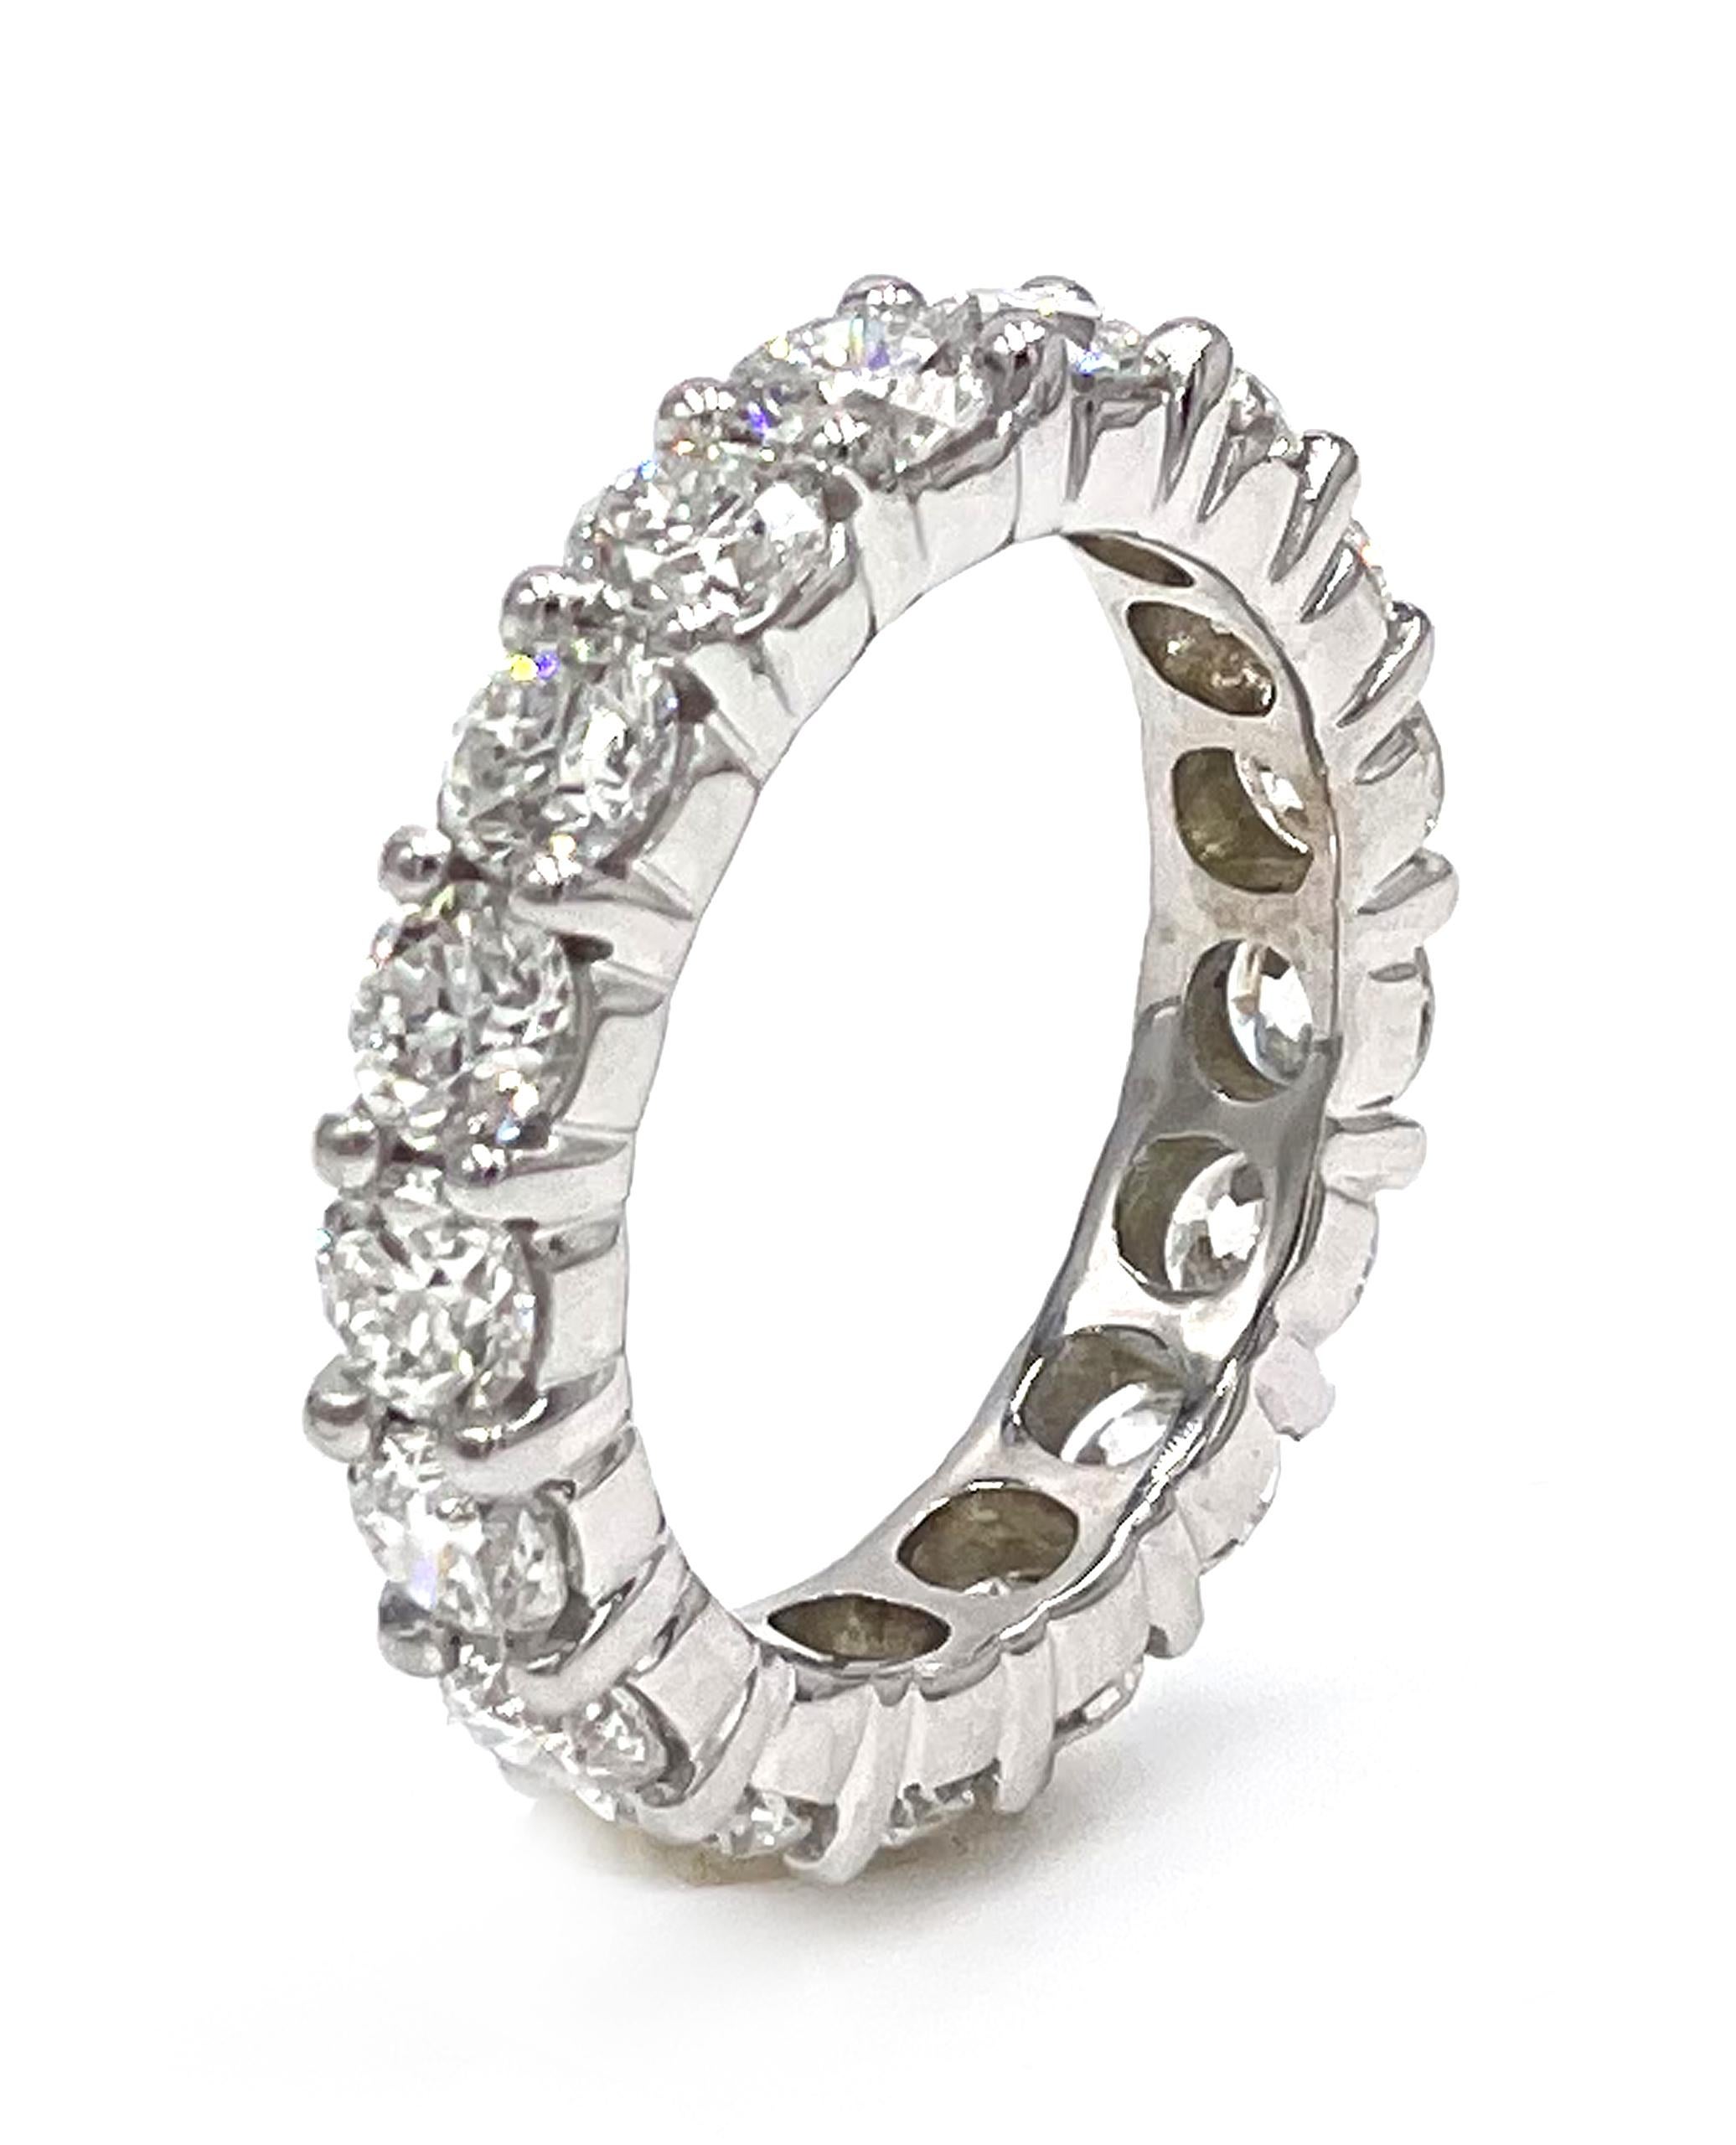 Bracelet d'éternité en or blanc 14K à branches partagées garni de 17 diamants ronds de taille brillant d'un poids total de 4,06 carats : Couleur G/H, pureté VS2/SI1.

* Taille de doigt 6